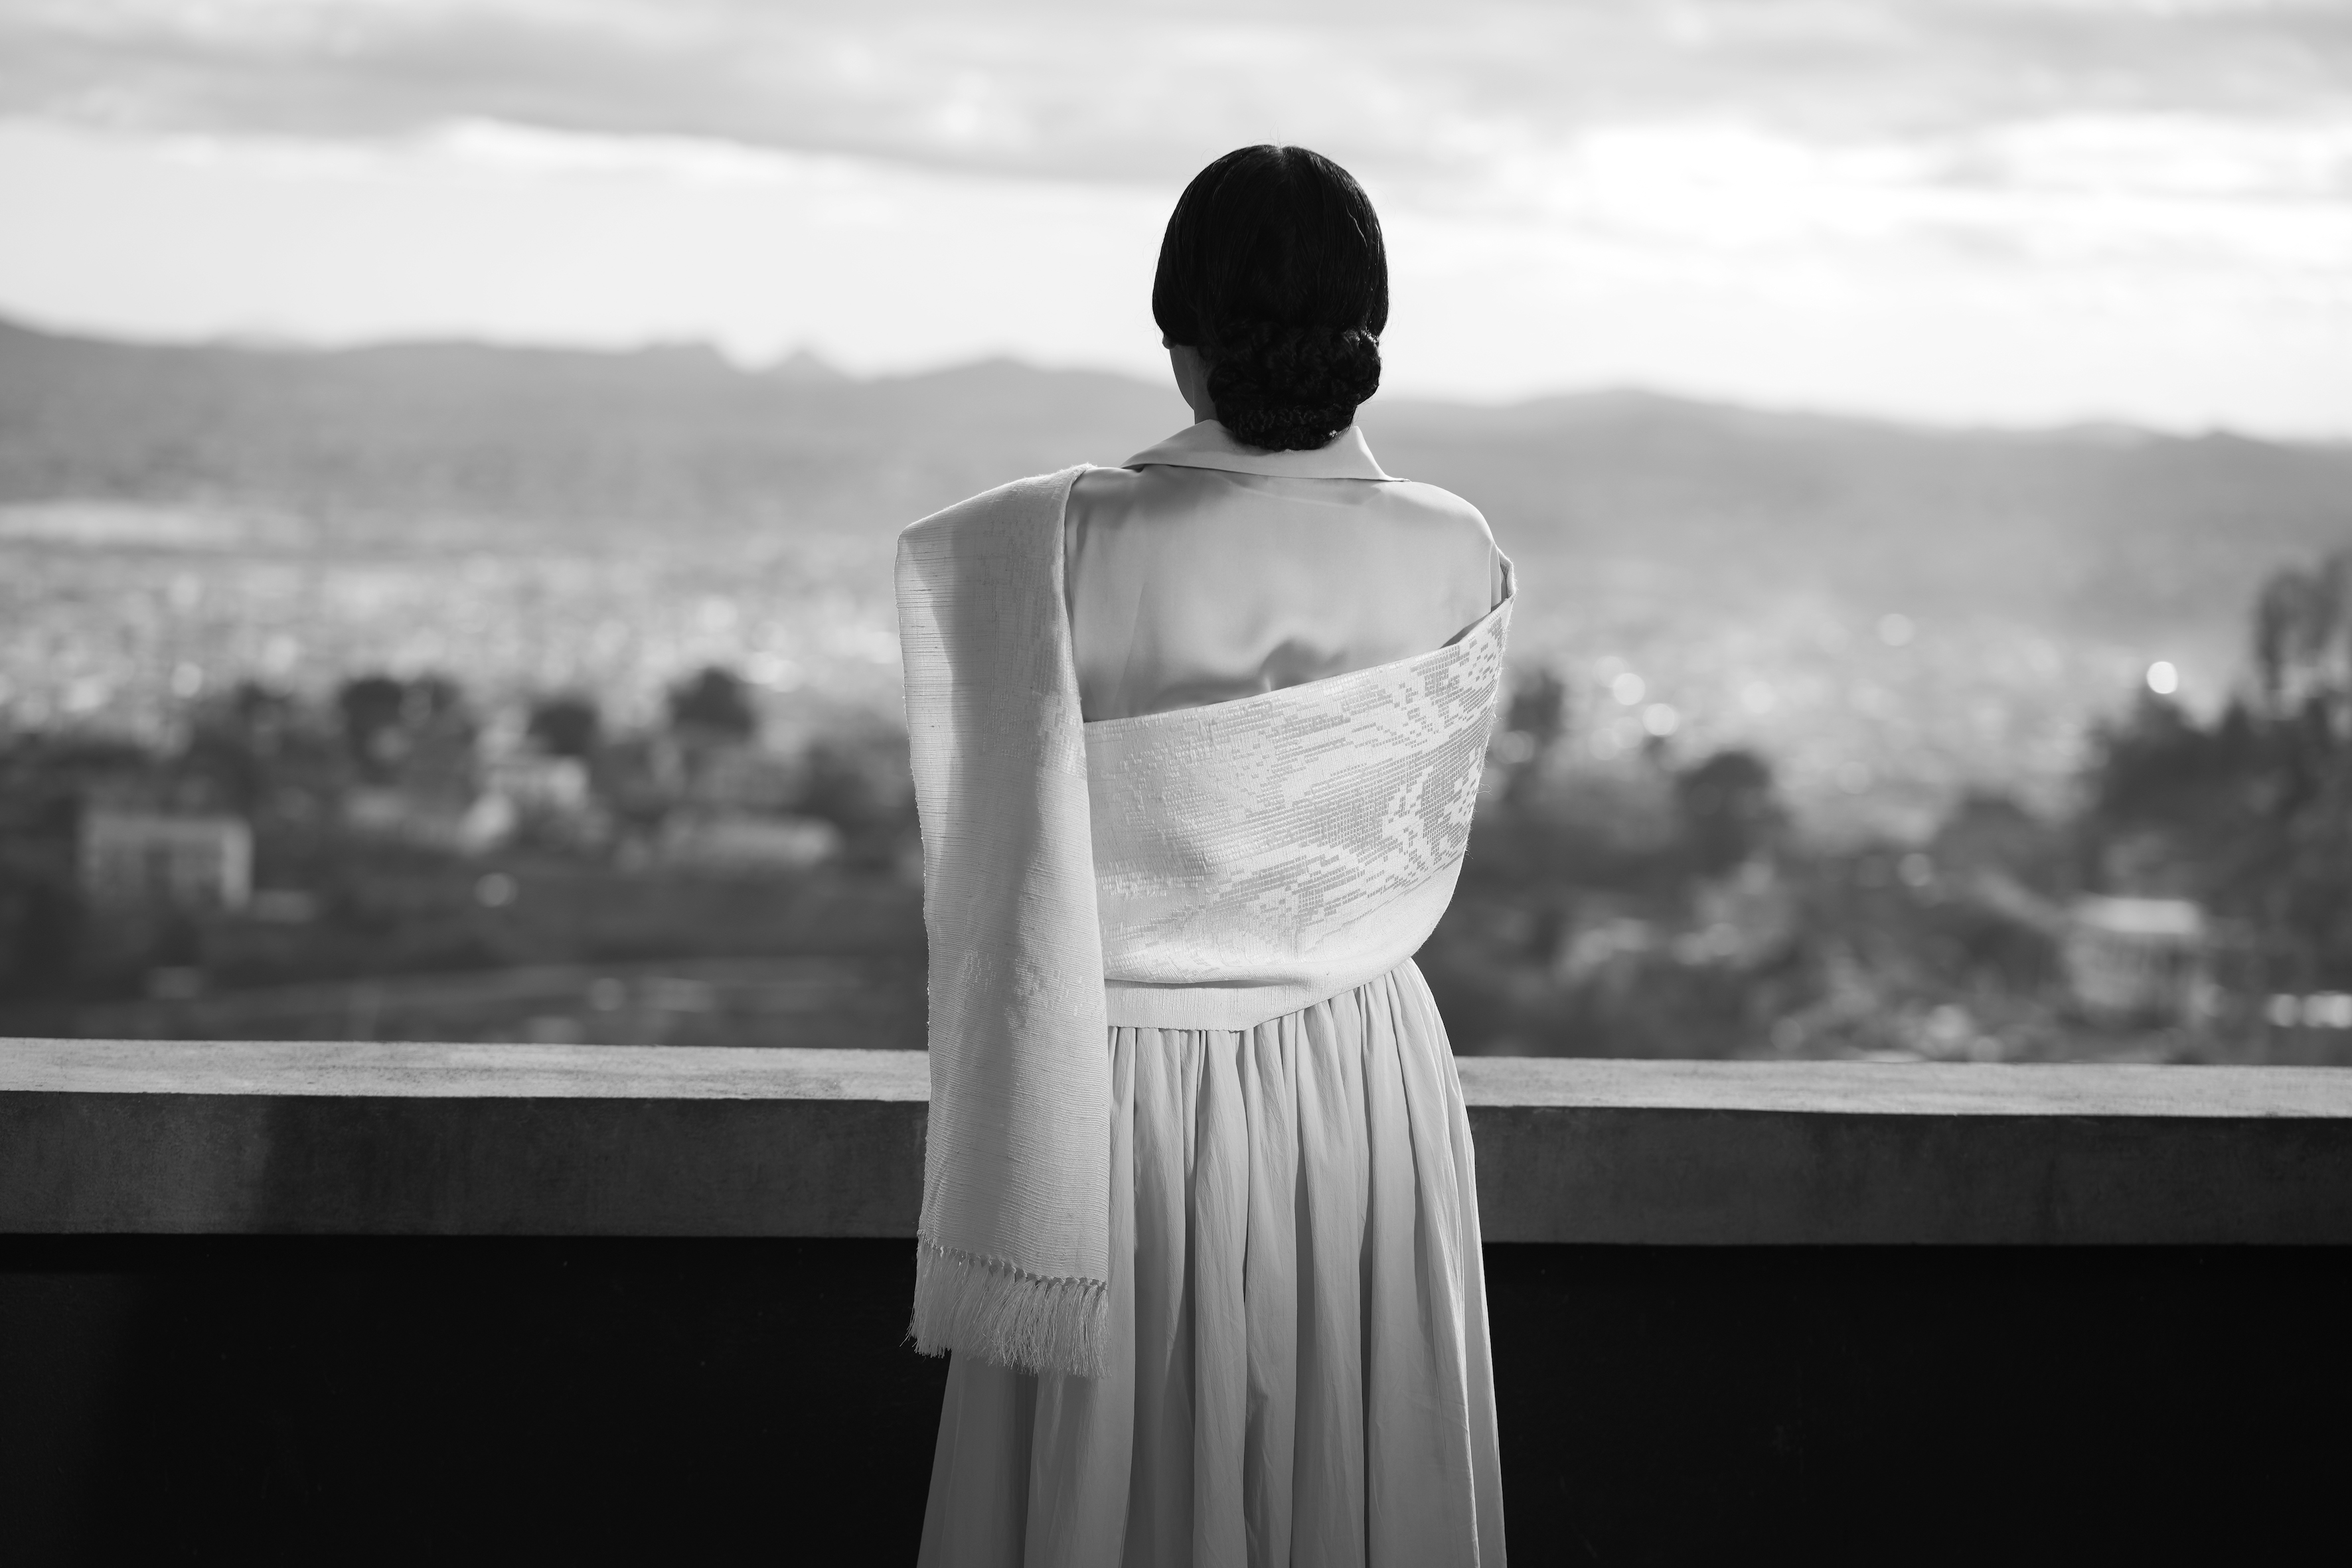 Man sieht ein film still aus Joël Andrianomearisoas PLEASE SING ME MY SONG BEFORE YOU GO. Es ist eine schwarz-weiß Aufnahme und man sieht von hinten eine Frau in einem hellen Kleid, die auf einer Art Balkon über eine Stadt blickt.